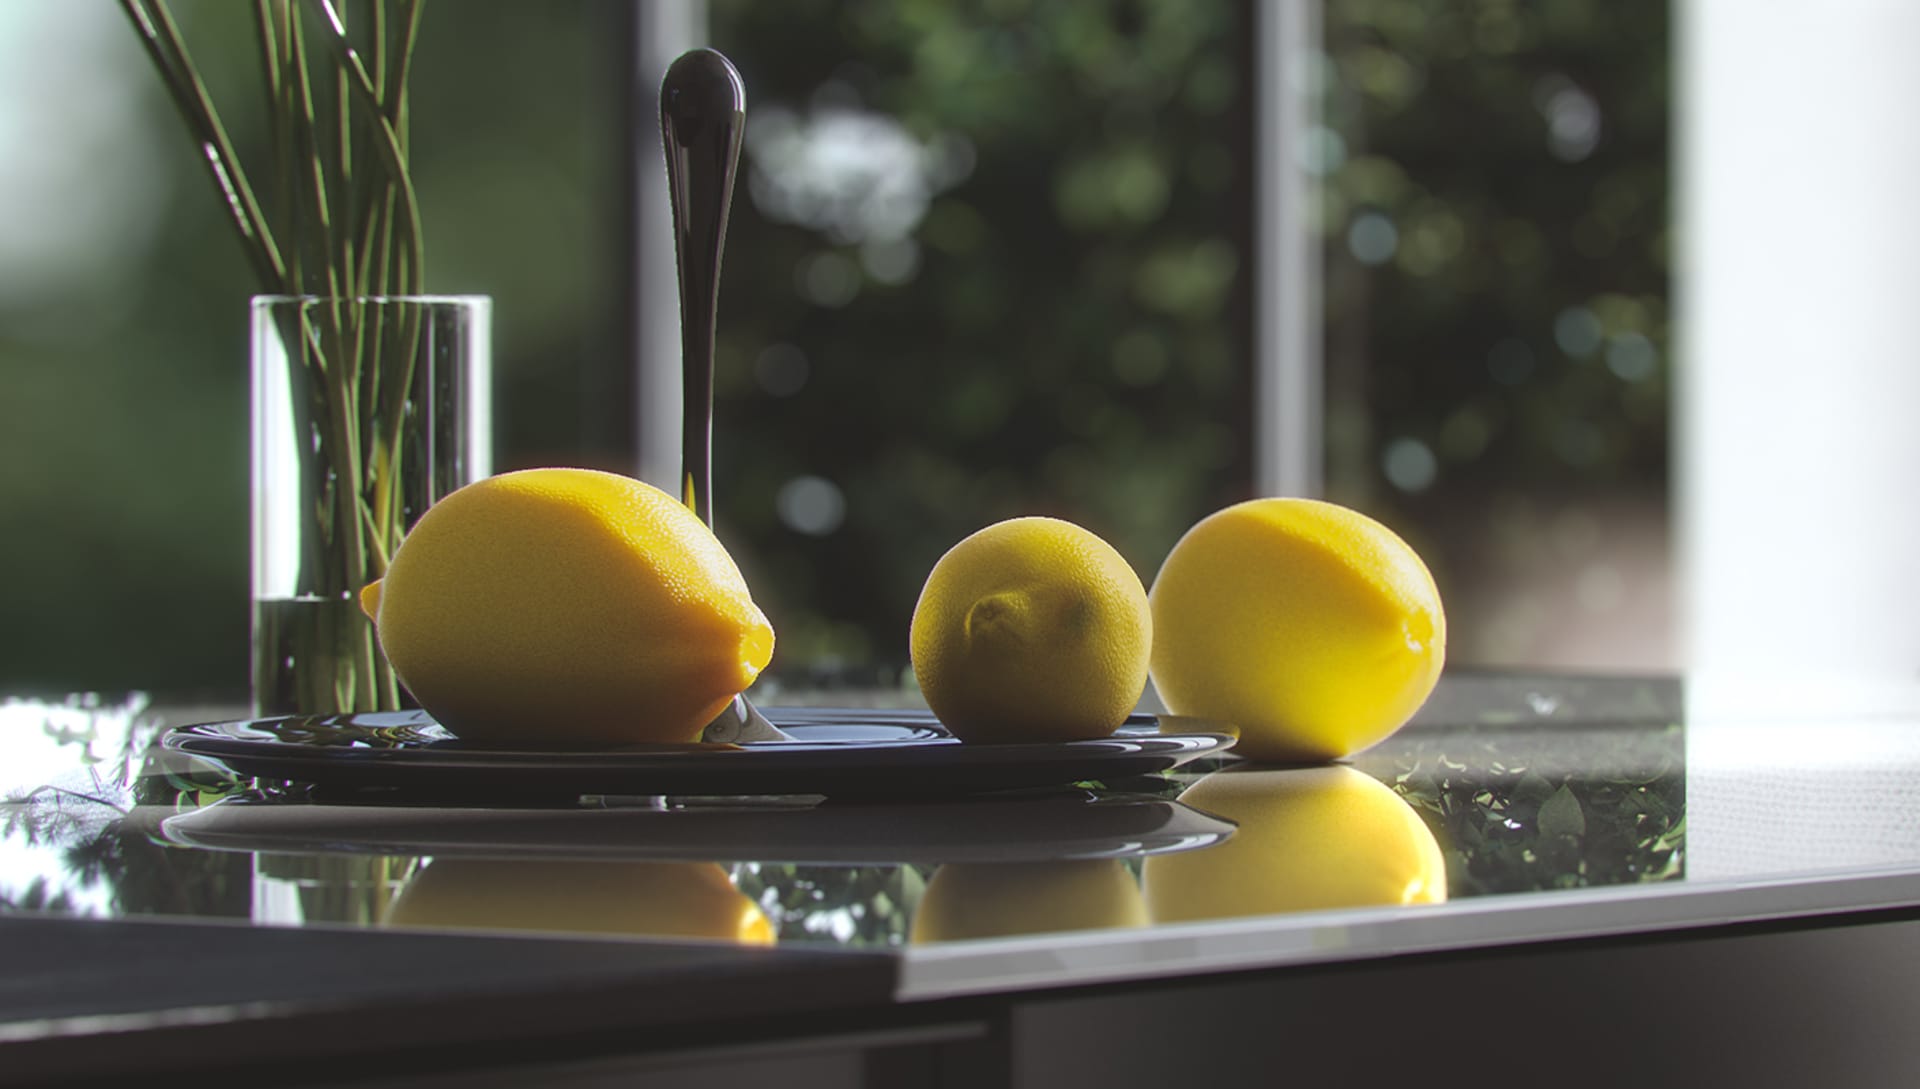 rendering-in-v-ray-lemons.jpg